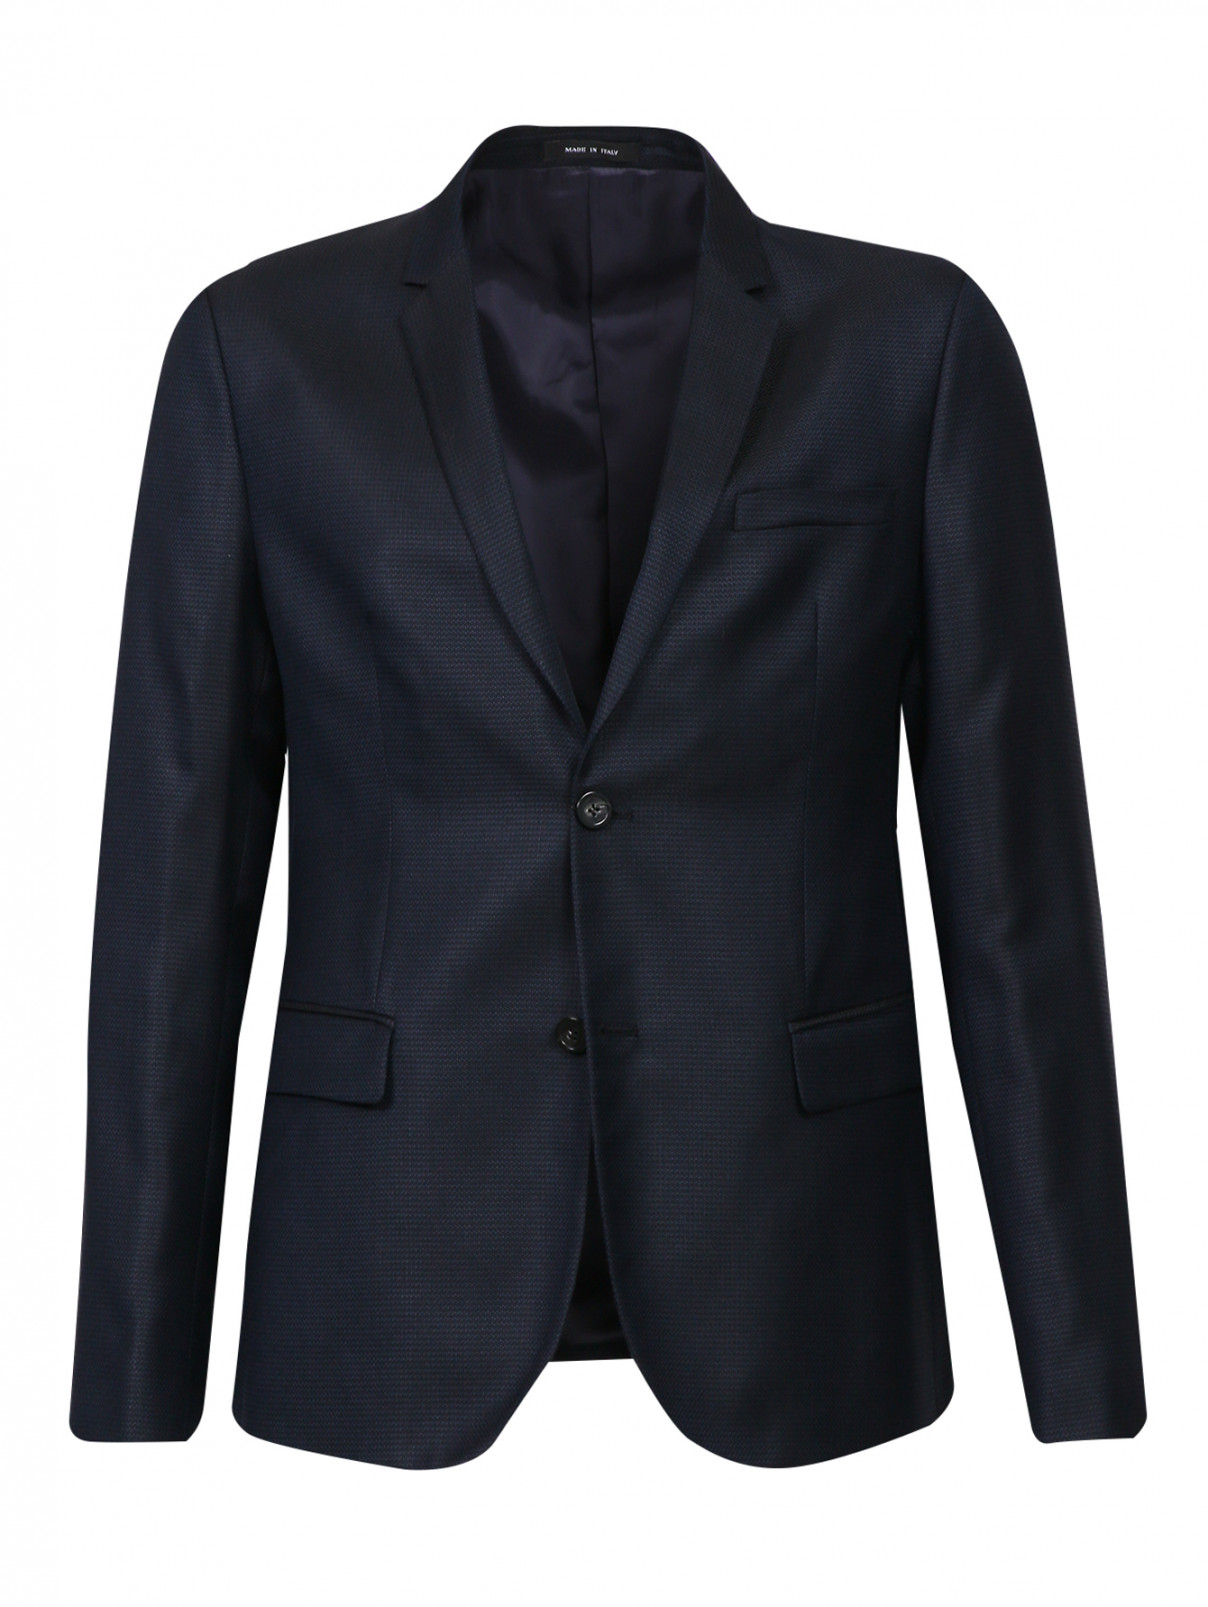 Пиджак из шерсти и шелка Emporio Armani  –  Общий вид  – Цвет:  Черный